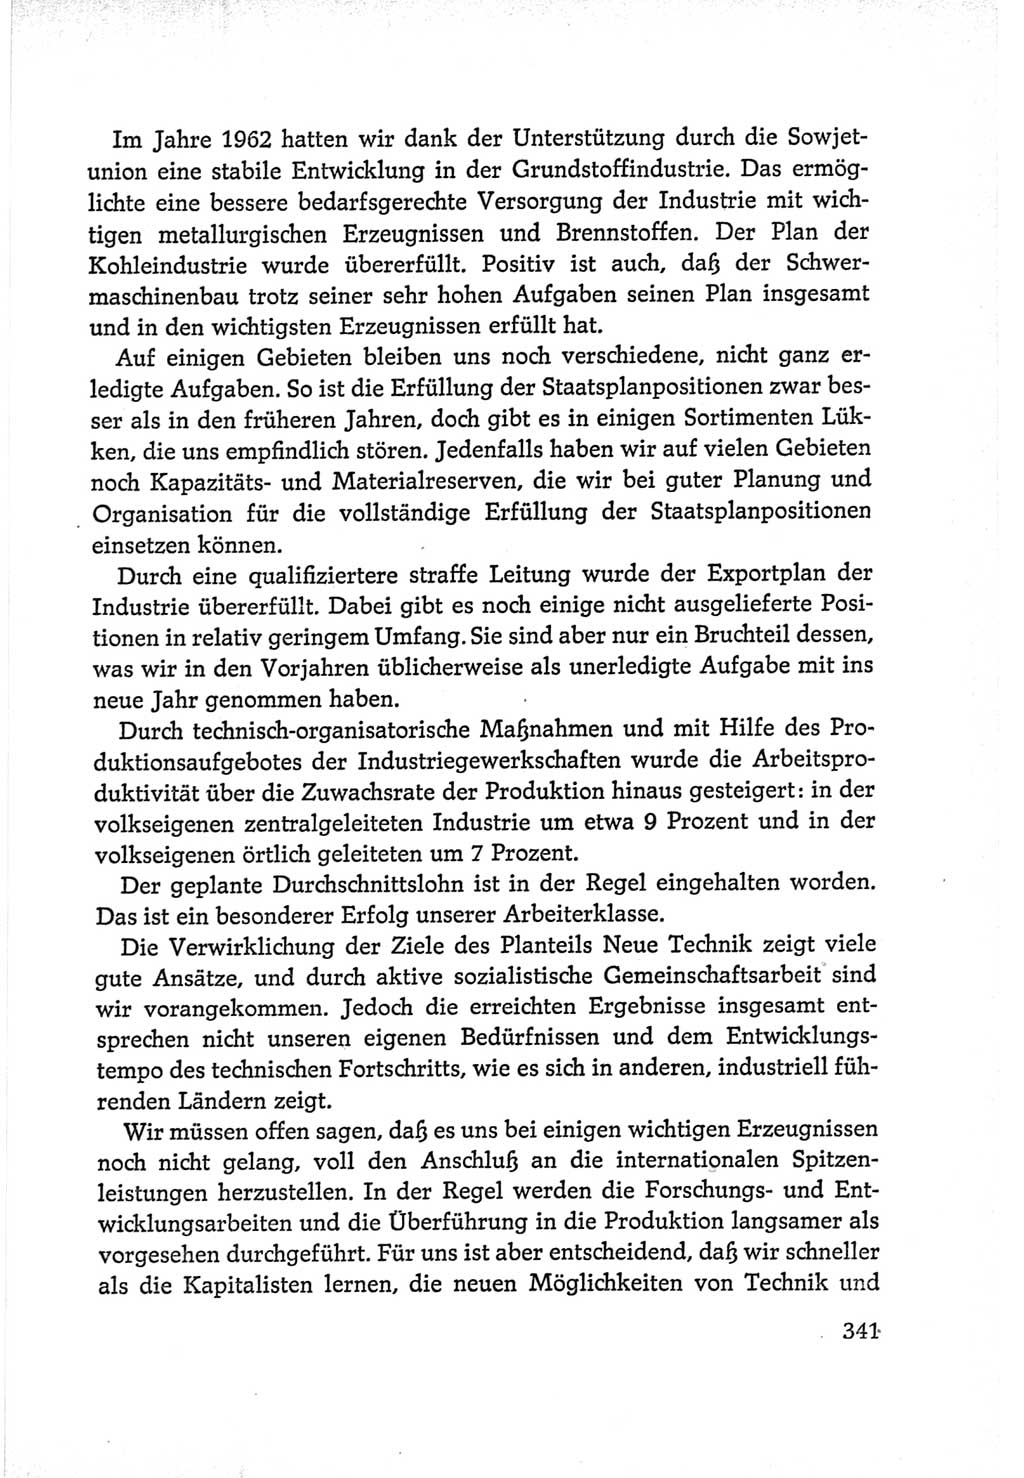 Protokoll der Verhandlungen des Ⅵ. Parteitages der Sozialistischen Einheitspartei Deutschlands (SED) [Deutsche Demokratische Republik (DDR)] 1963, Band Ⅰ, Seite 341 (Prot. Verh. Ⅵ. PT SED DDR 1963, Bd. Ⅰ, S. 341)